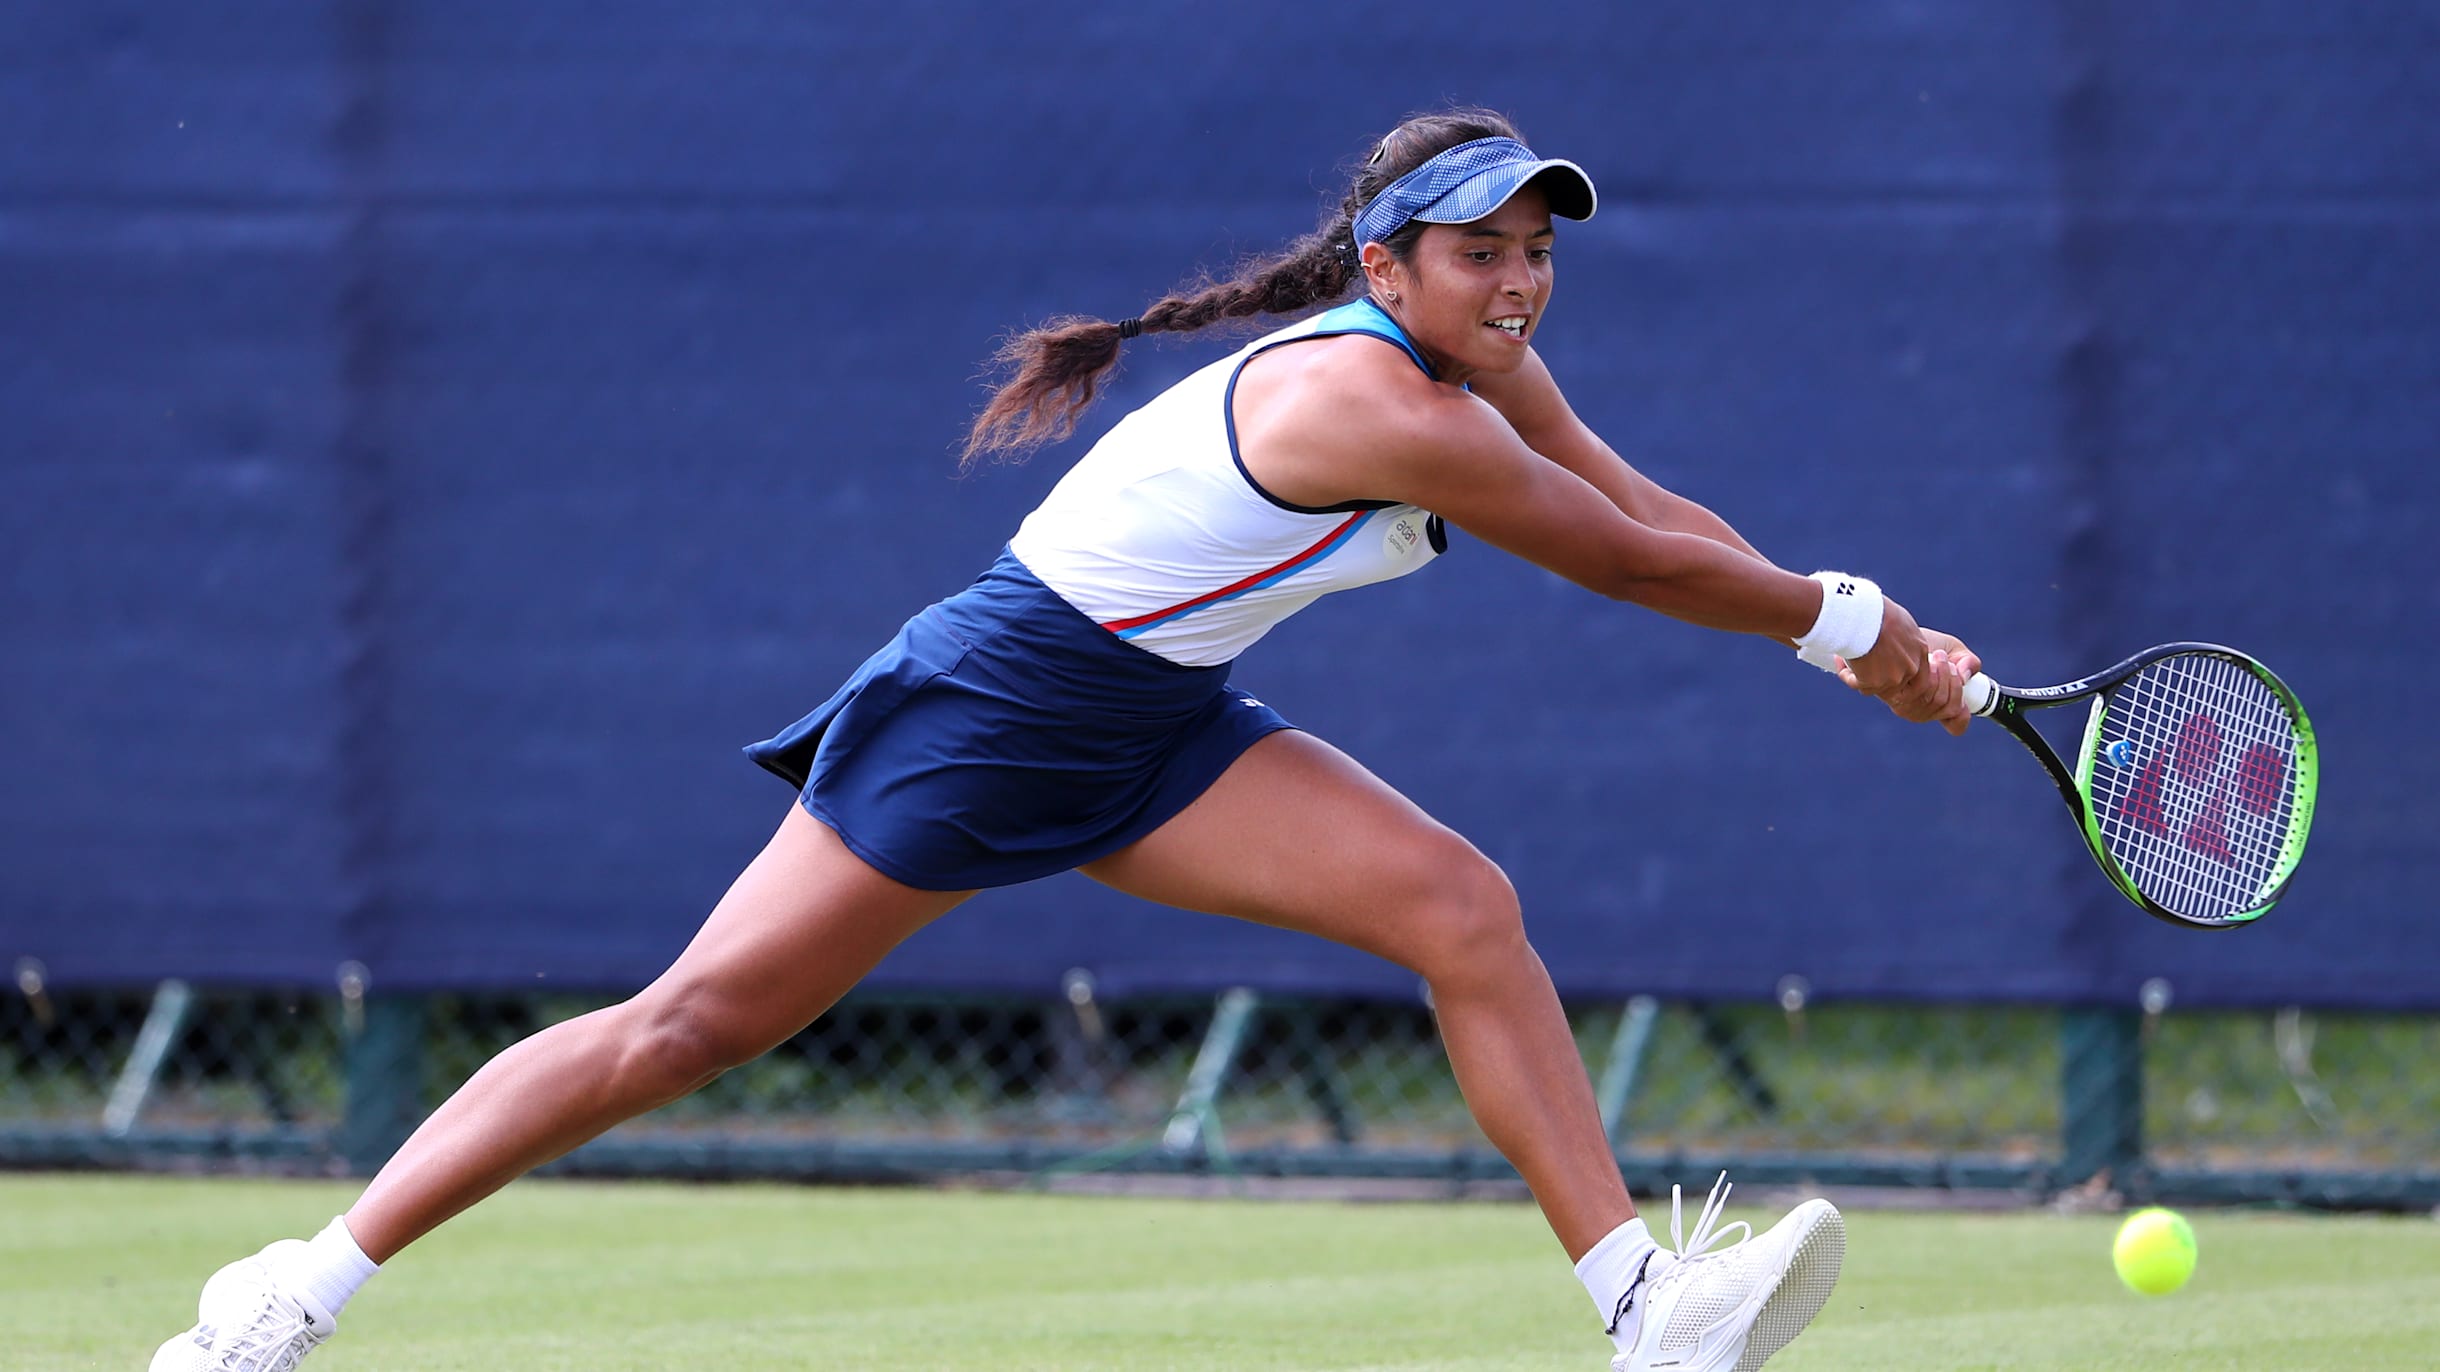 Indias Ankita Raina, Sumit Nagal lose in US Open 2021 qualifiers